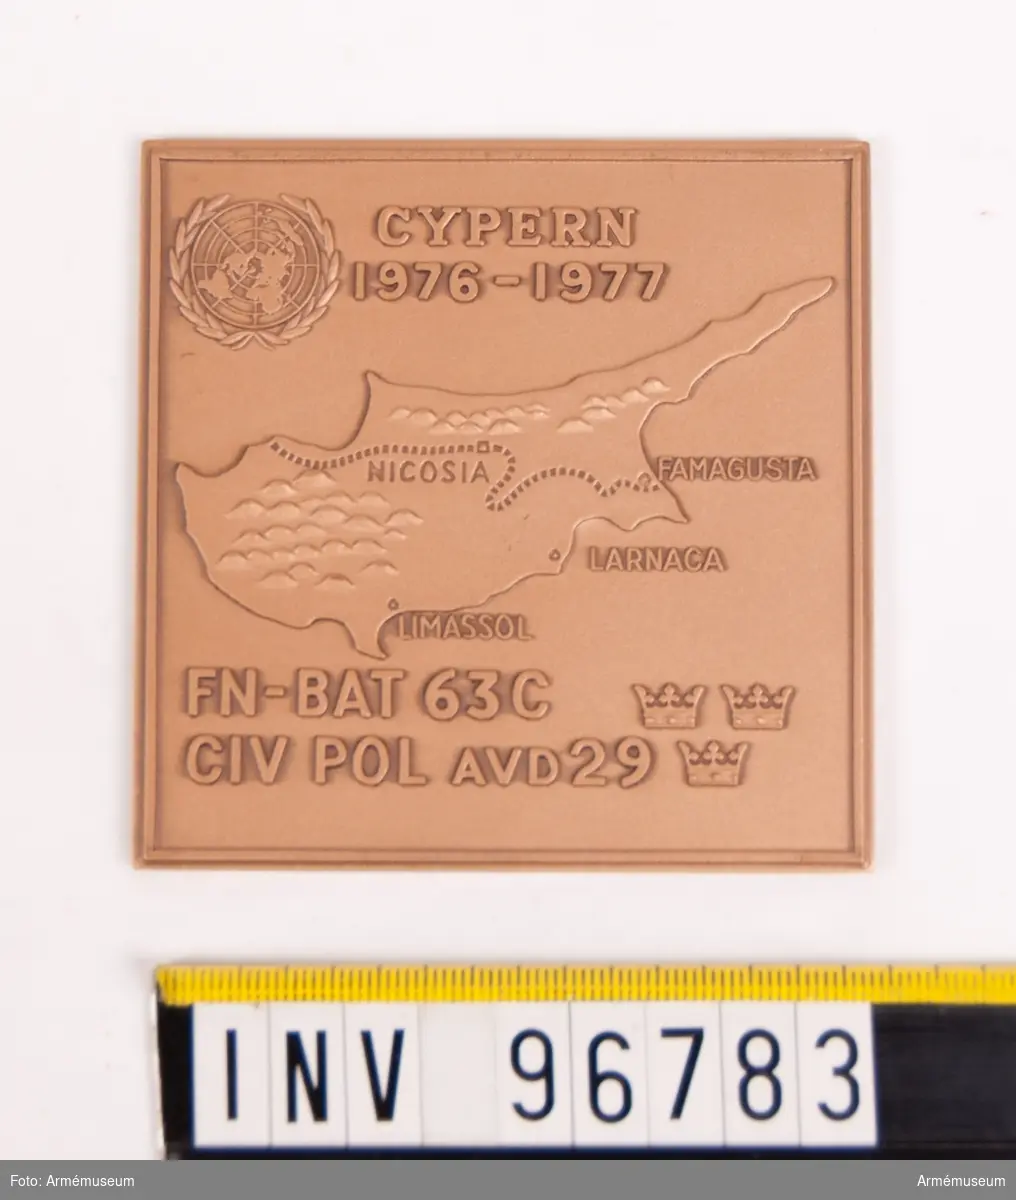 Plakett i brons för FN-BAT 63 C CIV POL AVD 29 Cypern 1976-1977.
Stans 45728.